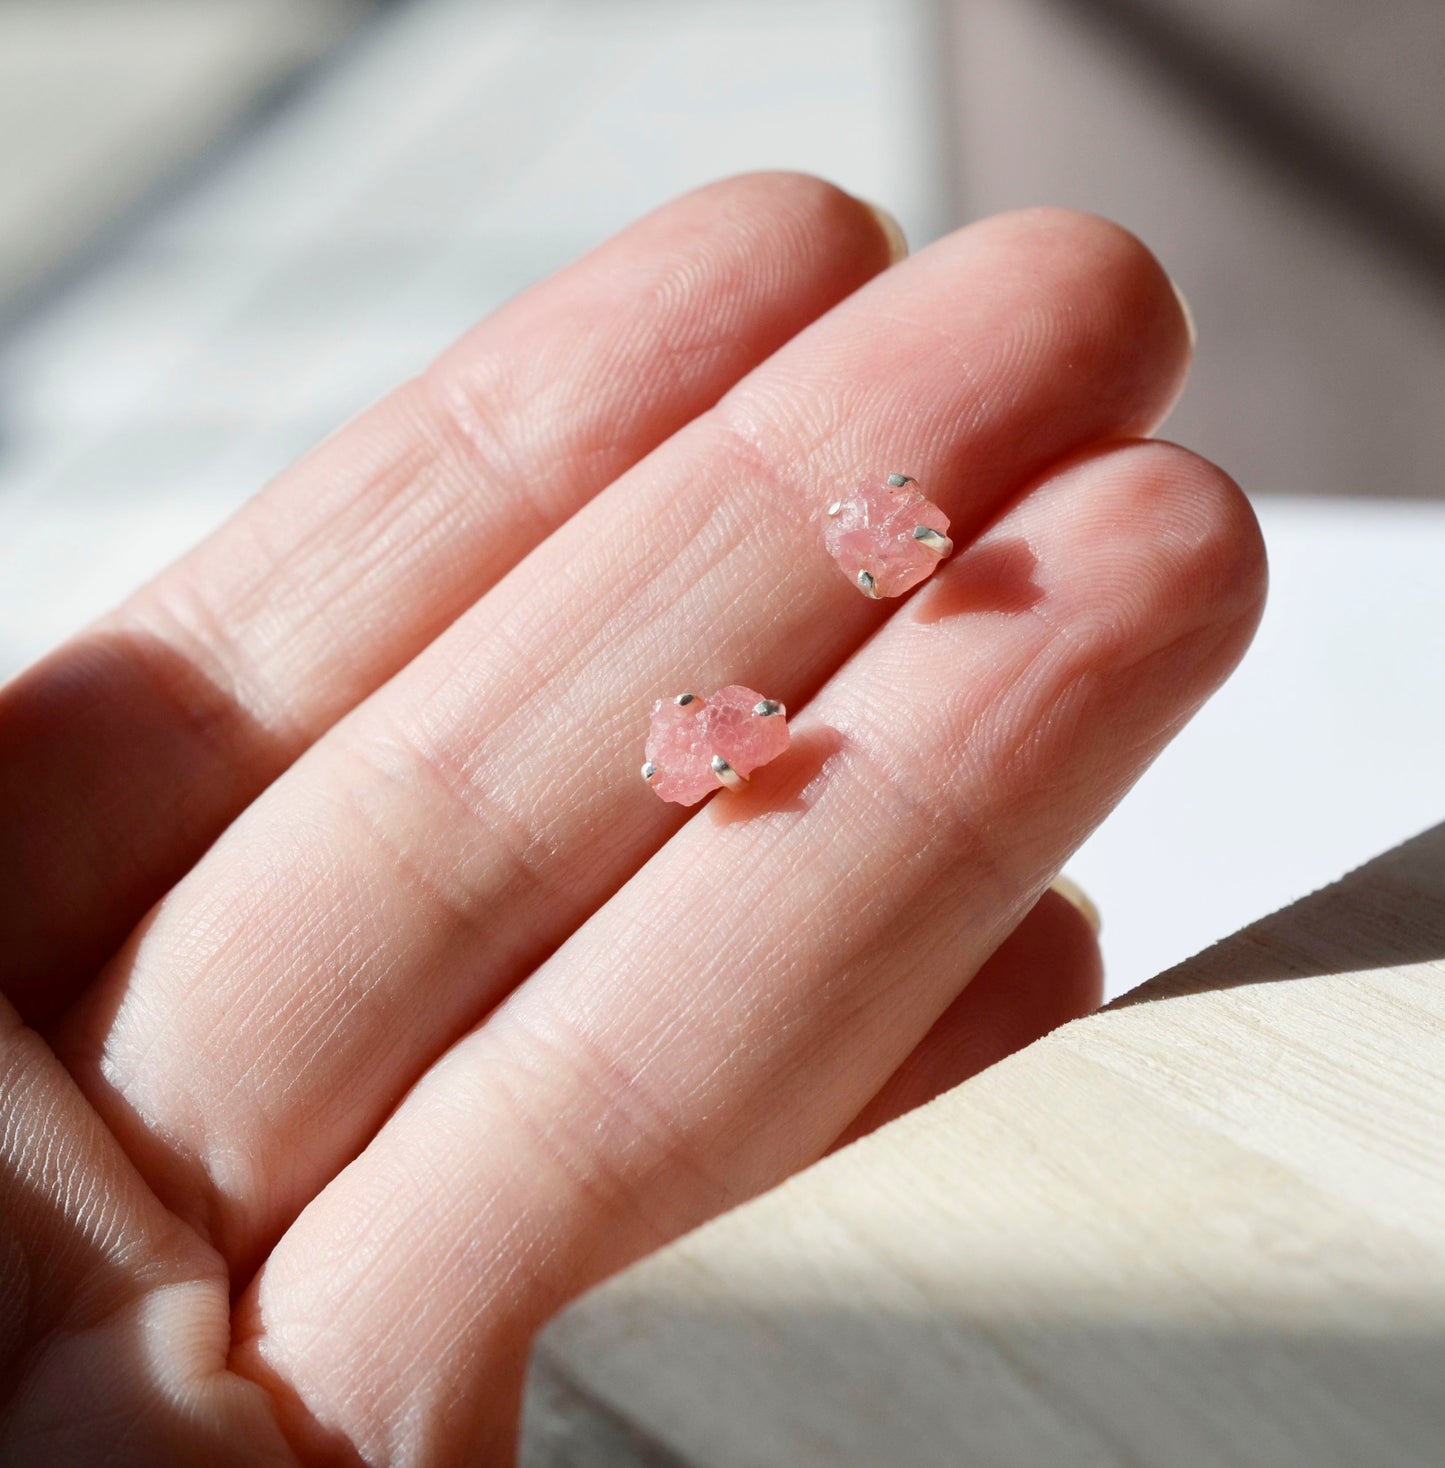 Rhodochrosite Earrings - Sterling Silver - Pink Rhodochrosite Studs - Raw Crystal Earrings - Small Stone Posts - Rhodochrosite Jewelry